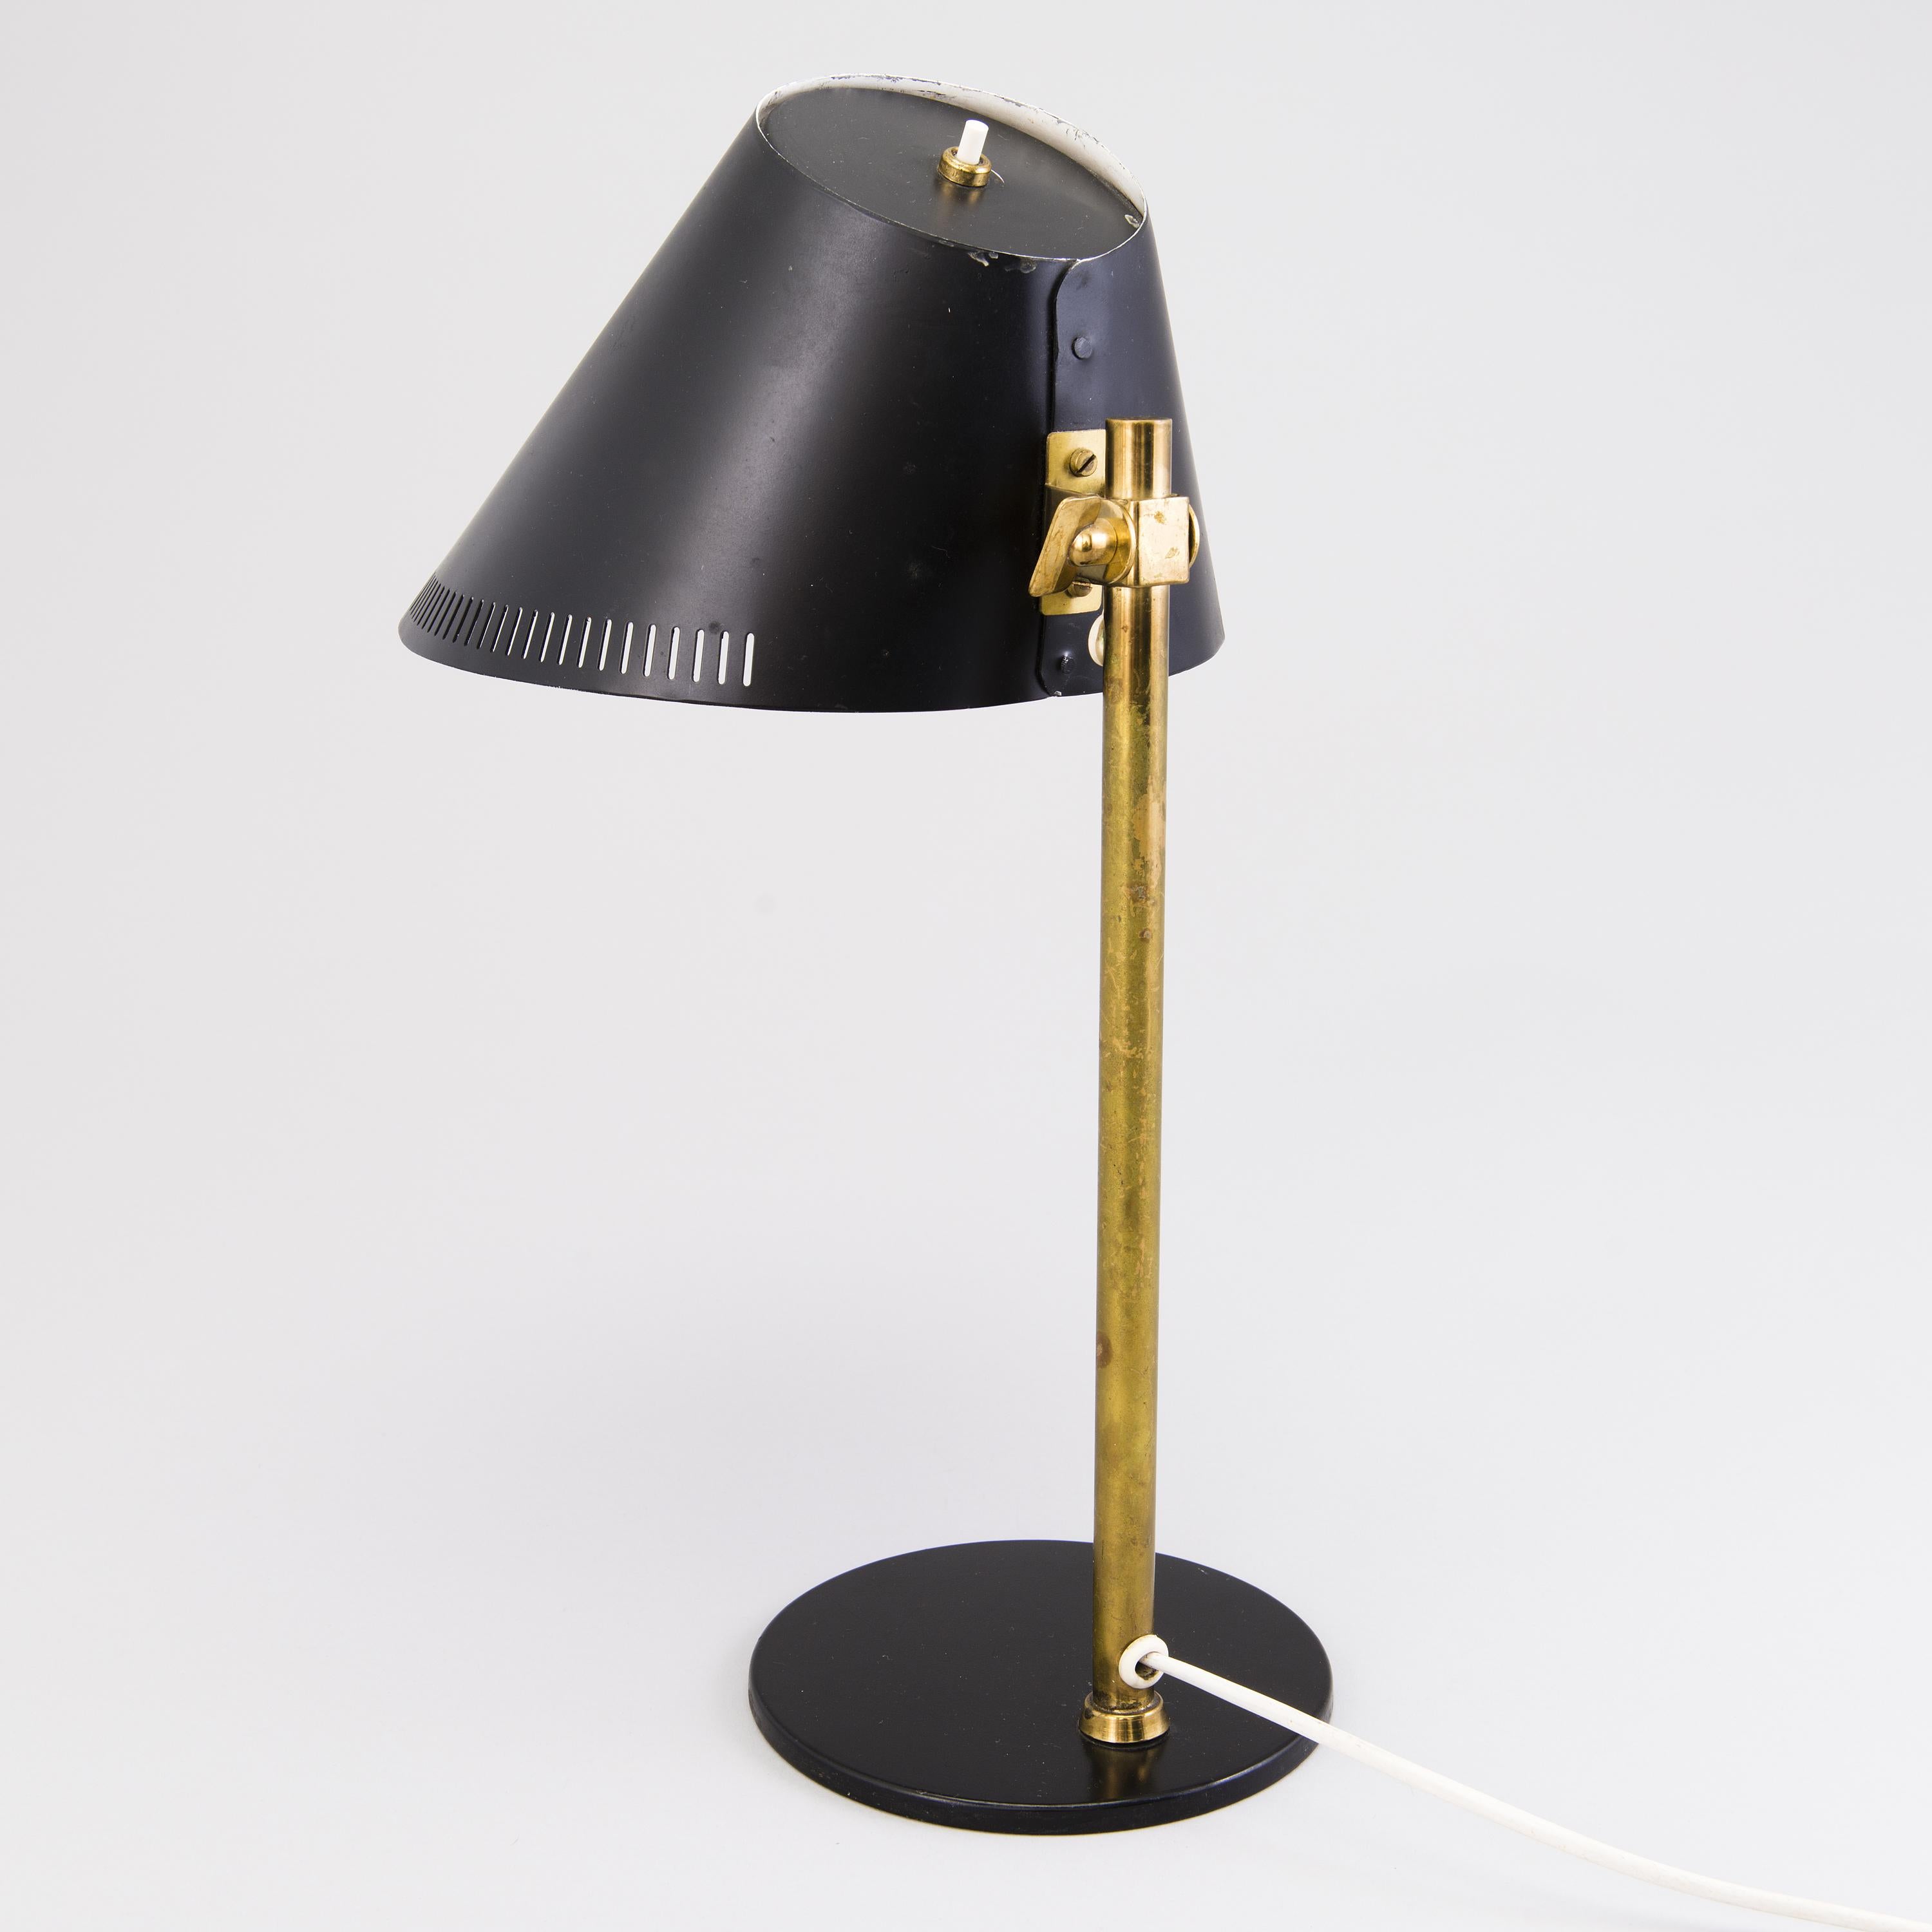 Lampe de table du milieu du 20e siècle, modèle 9227 conçu pour Idman par Paavo Tynell.
Laiton et métal peint en noir. Marque du fabricant.
Peut être recâblé sur demande.